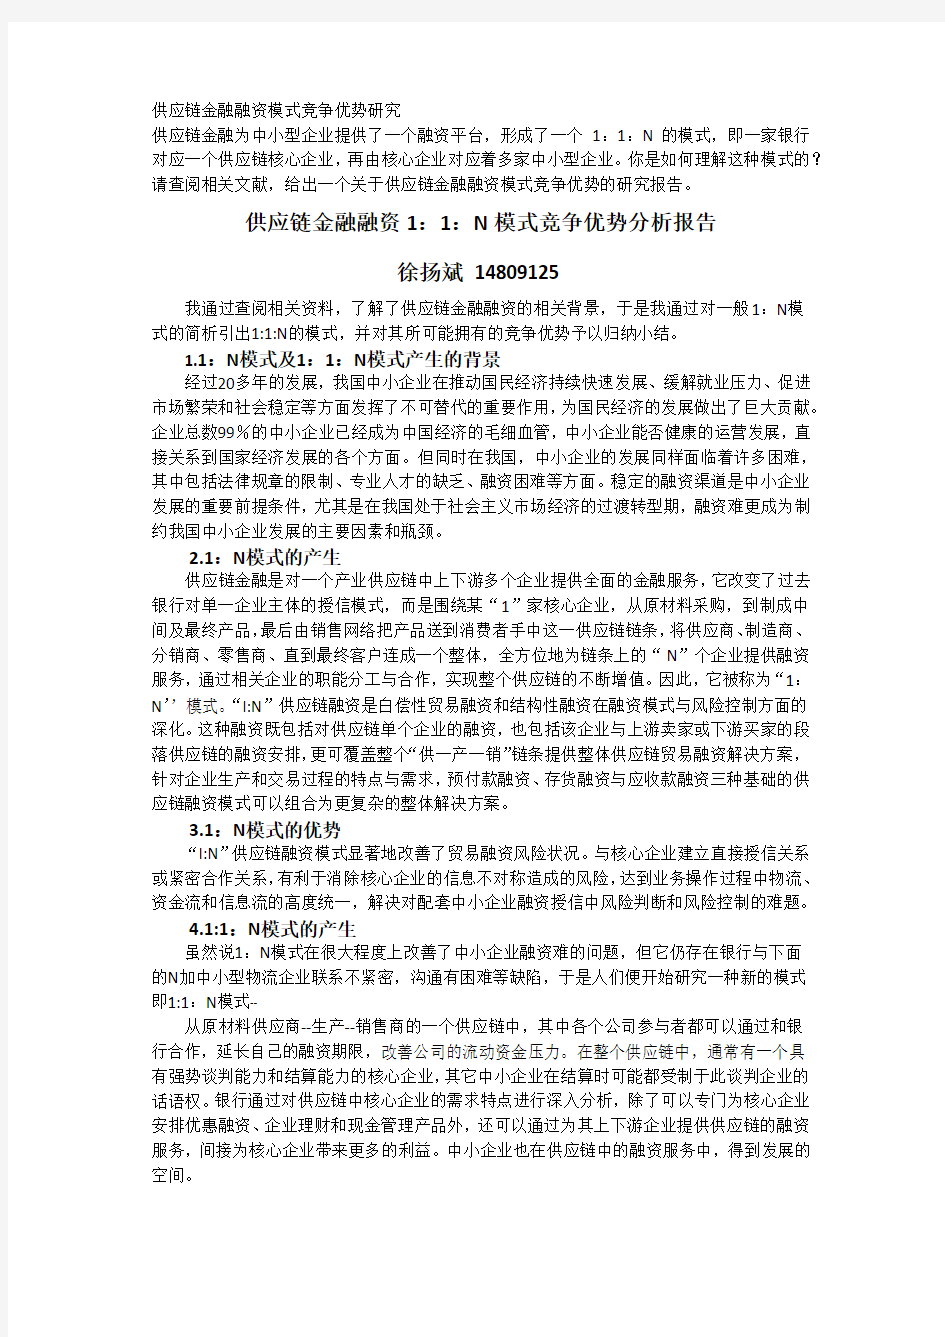 供应链金融融资1：1：N模式竞争优势分析报告徐扬斌  - 系统工程研究所